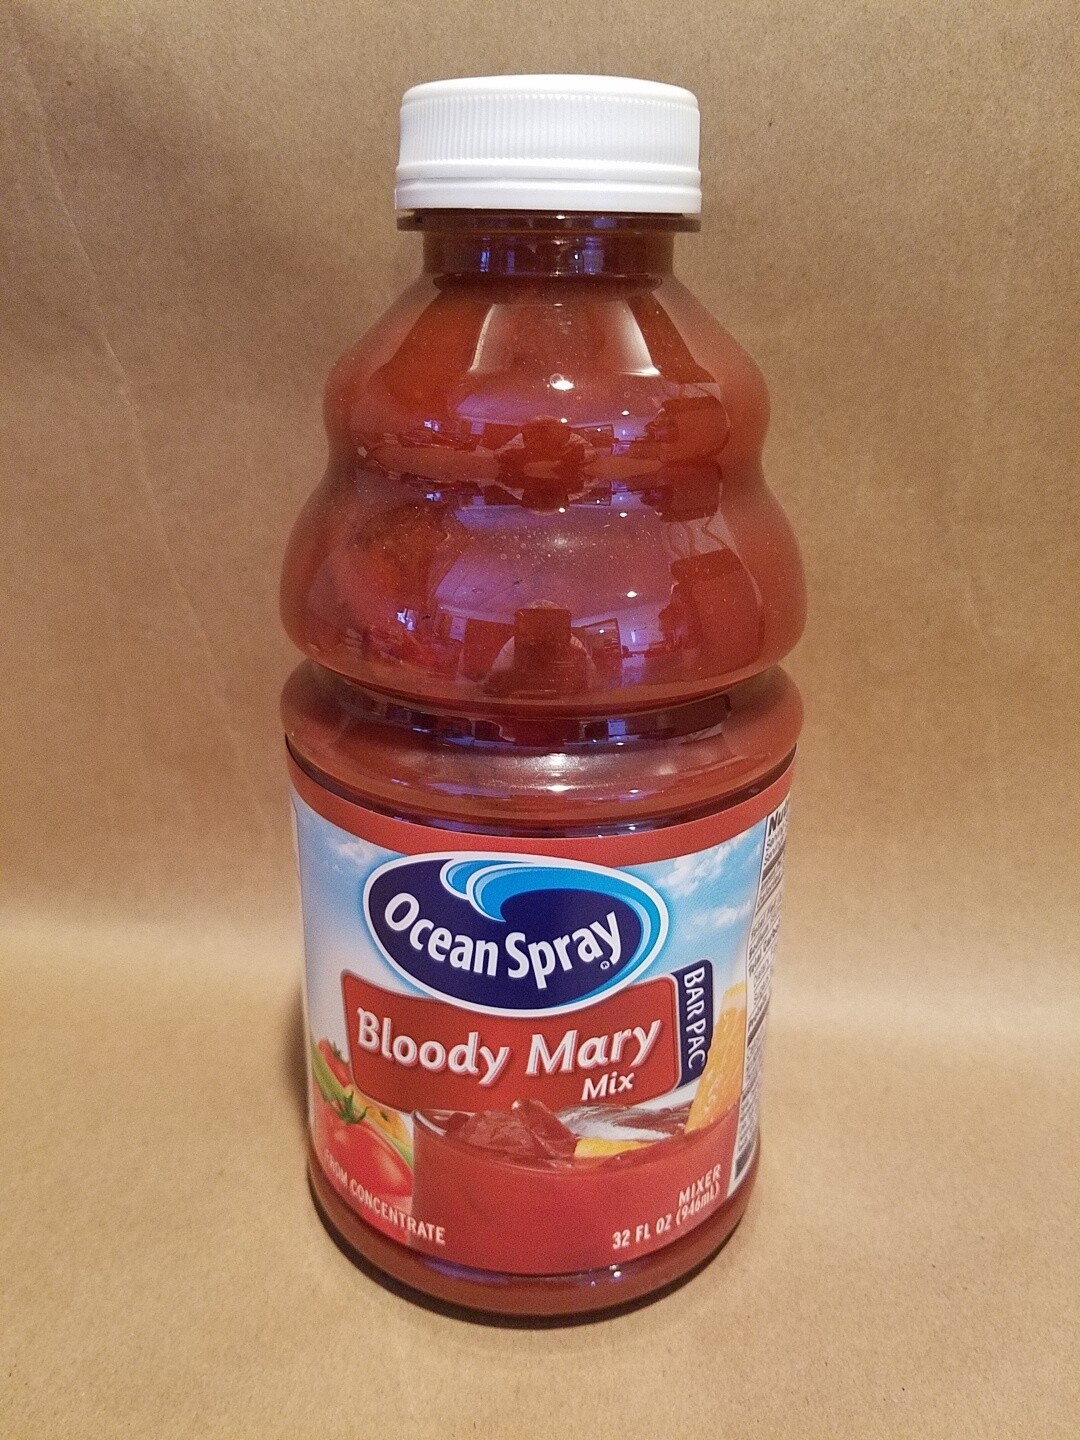 Bloody Mary Mix Ocean Spray